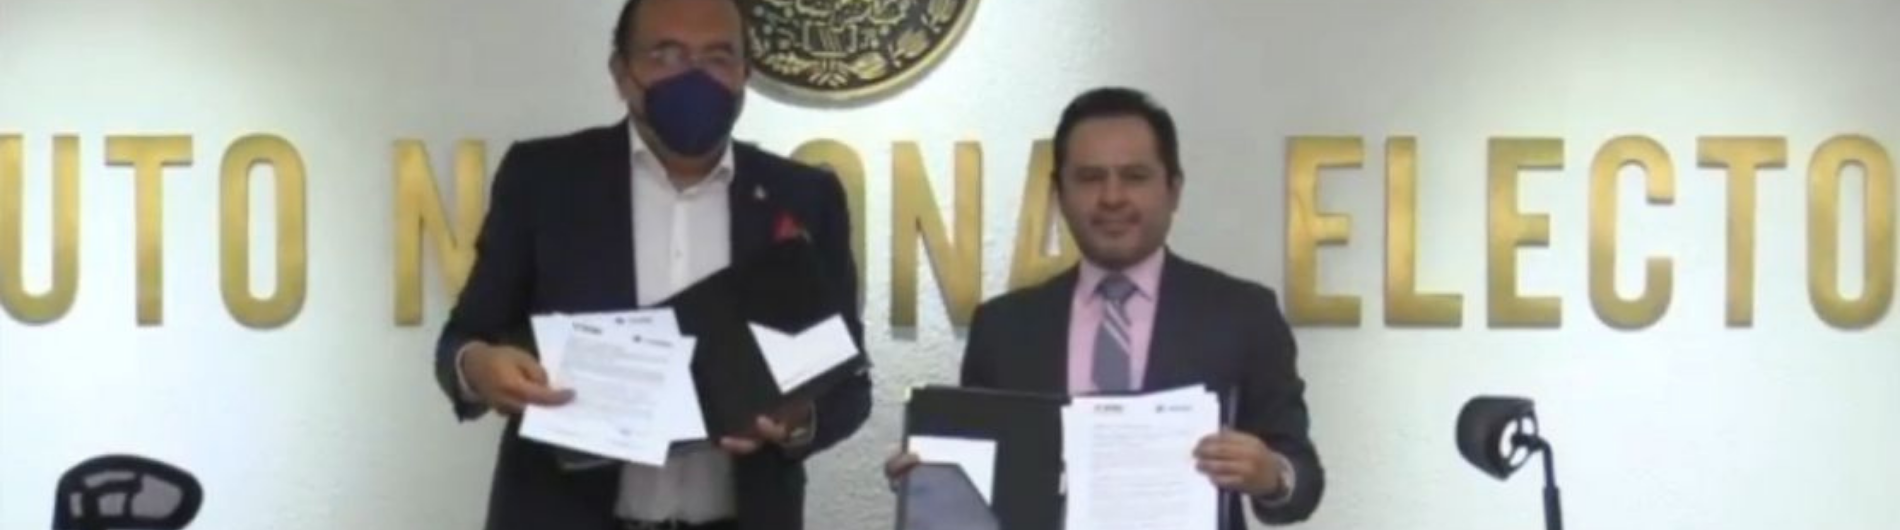 El dirigente de los empresarios, Armando Zúñiga Salinas, y el Vocal Ejecutivo del INE en la Ciudad de México, Donaciano Muñoz Loyola, con el convenio firmado este mediodía.